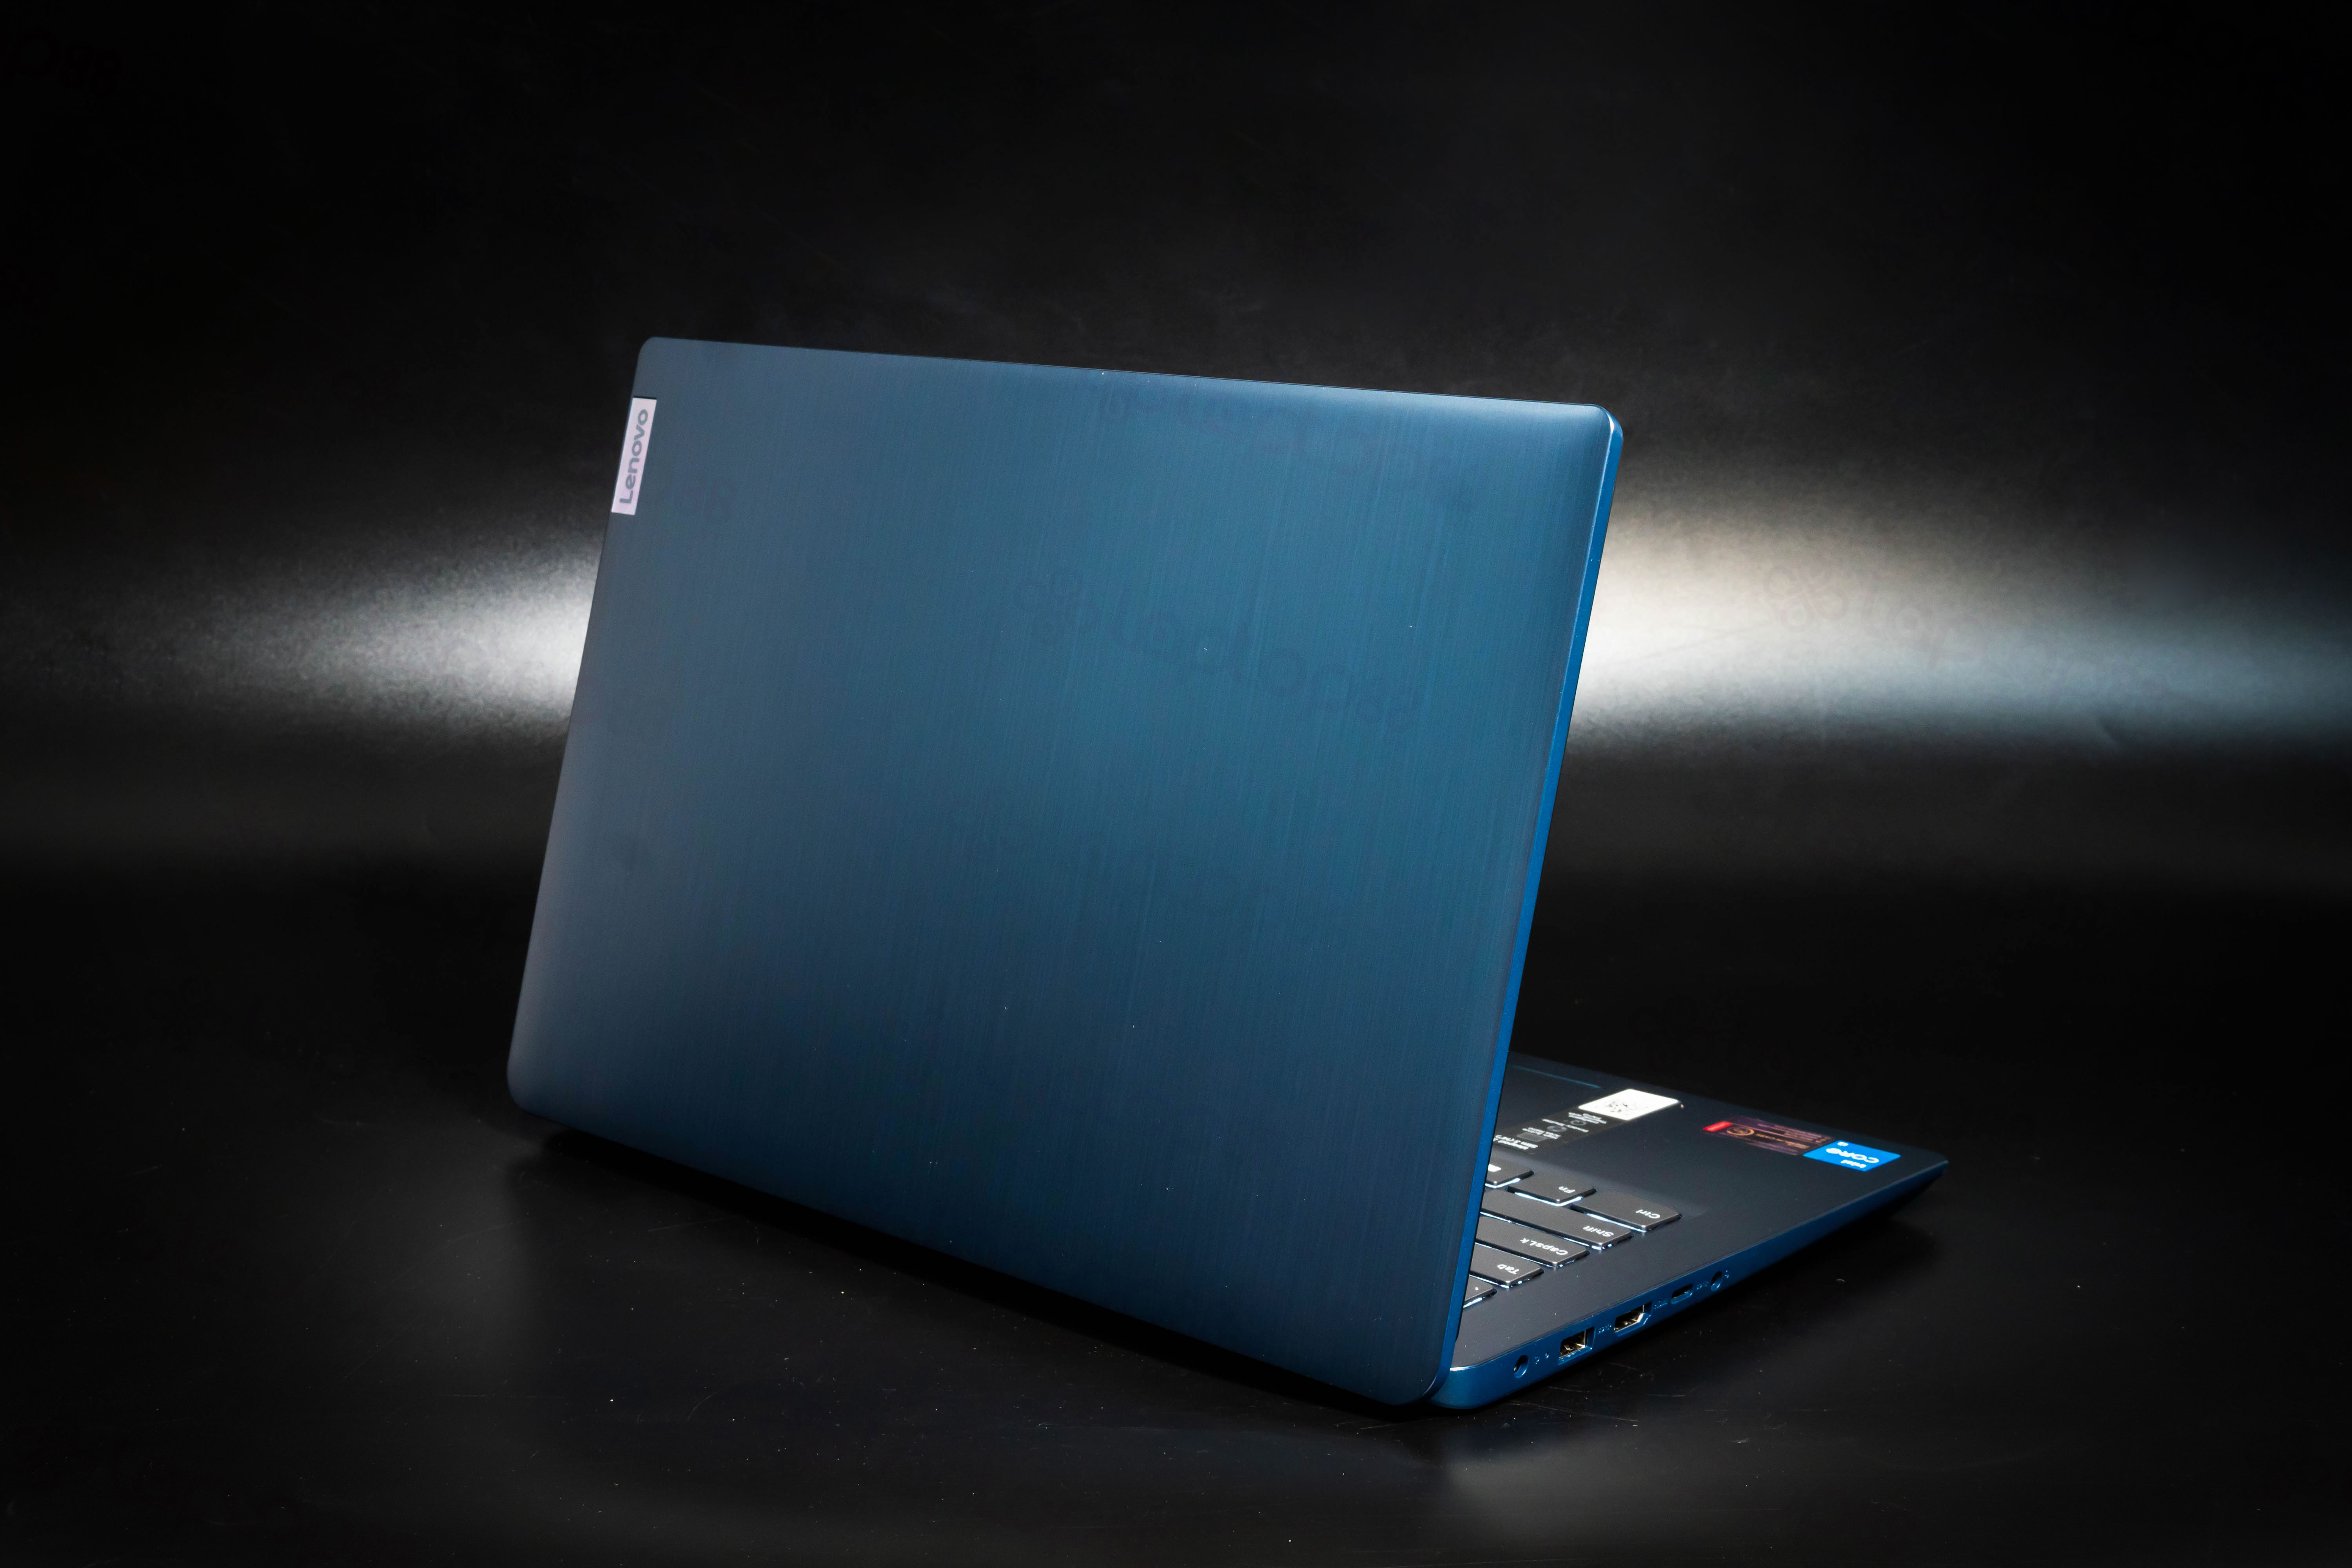 Lenovo Ideapad Slim 3 15ITL6 hoàn hảo trong phân khúc laptop văn phòng